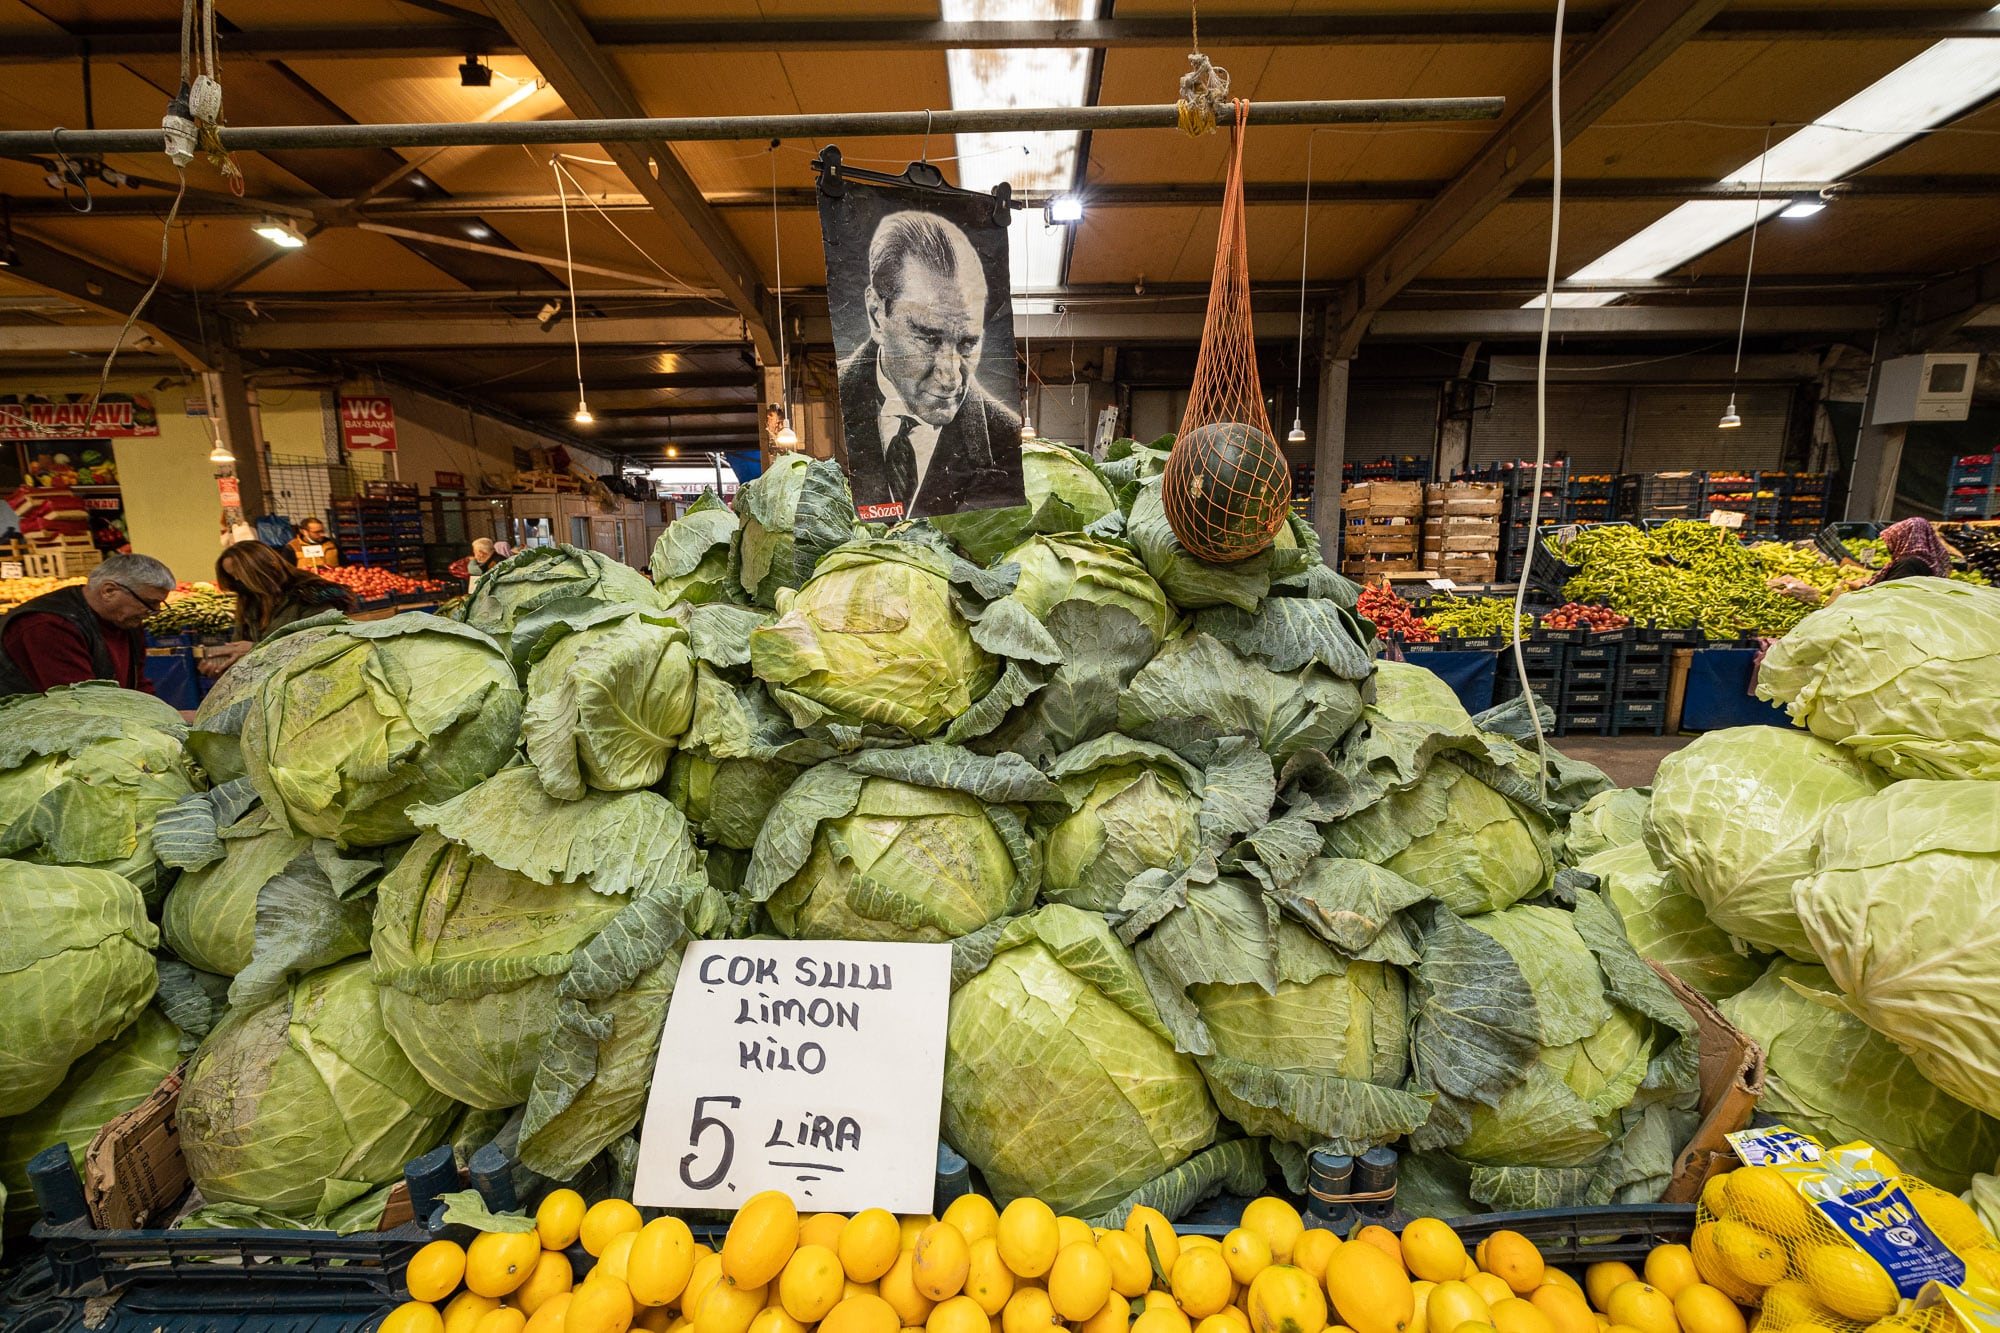 Atatürk presiding over some rather huge vegetables